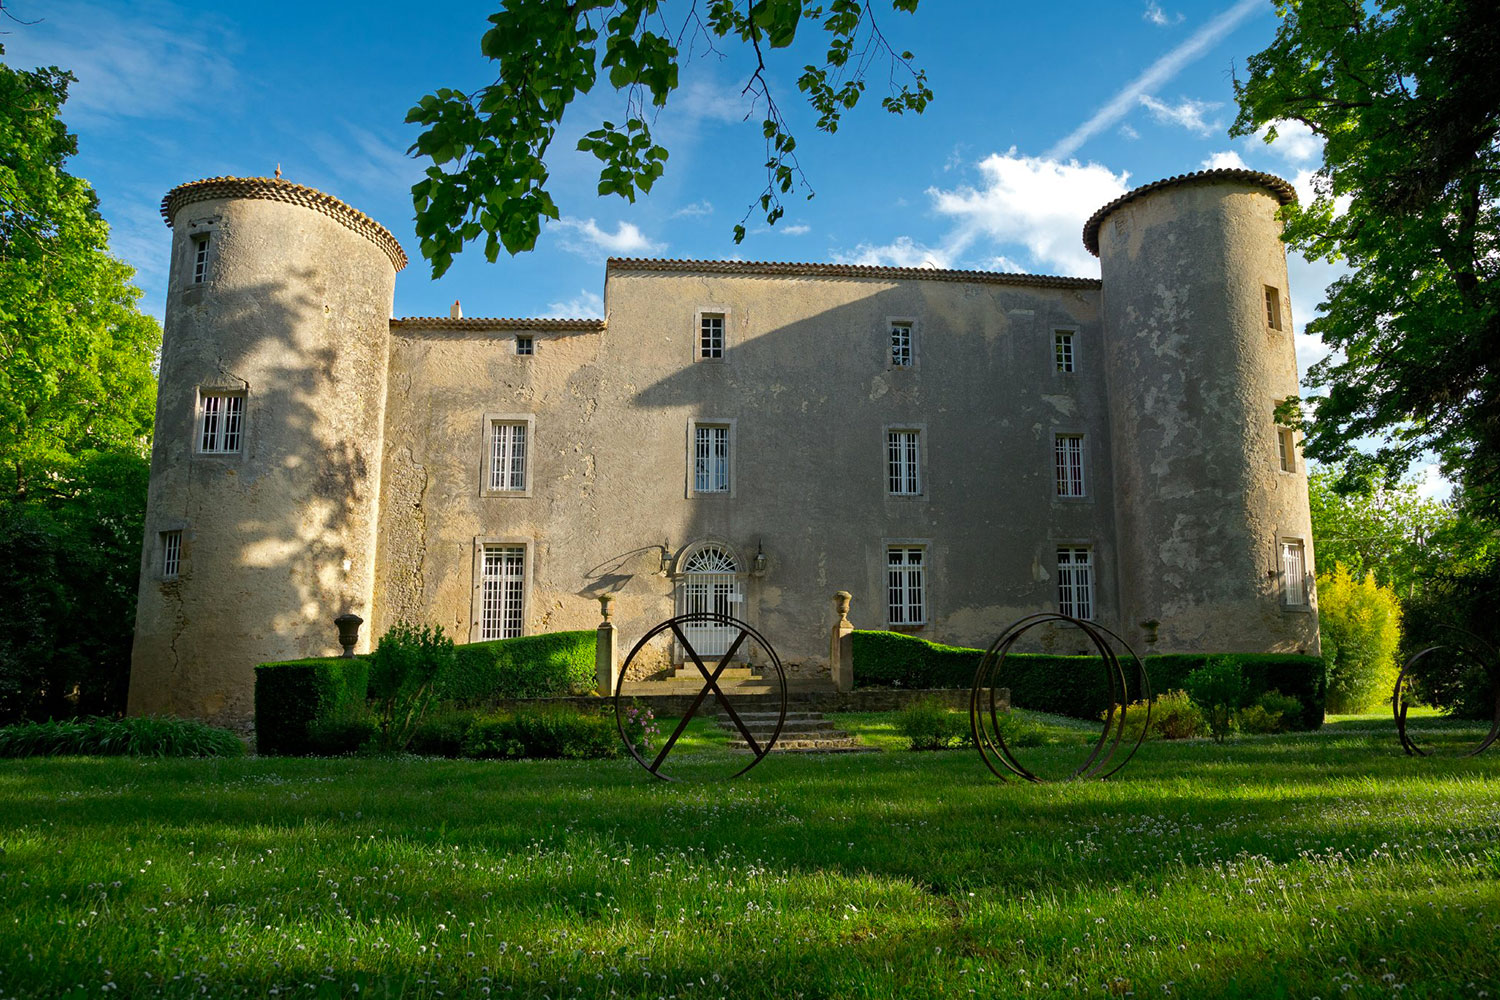 Magnifique vue de face du château / magnificent front view of the castle